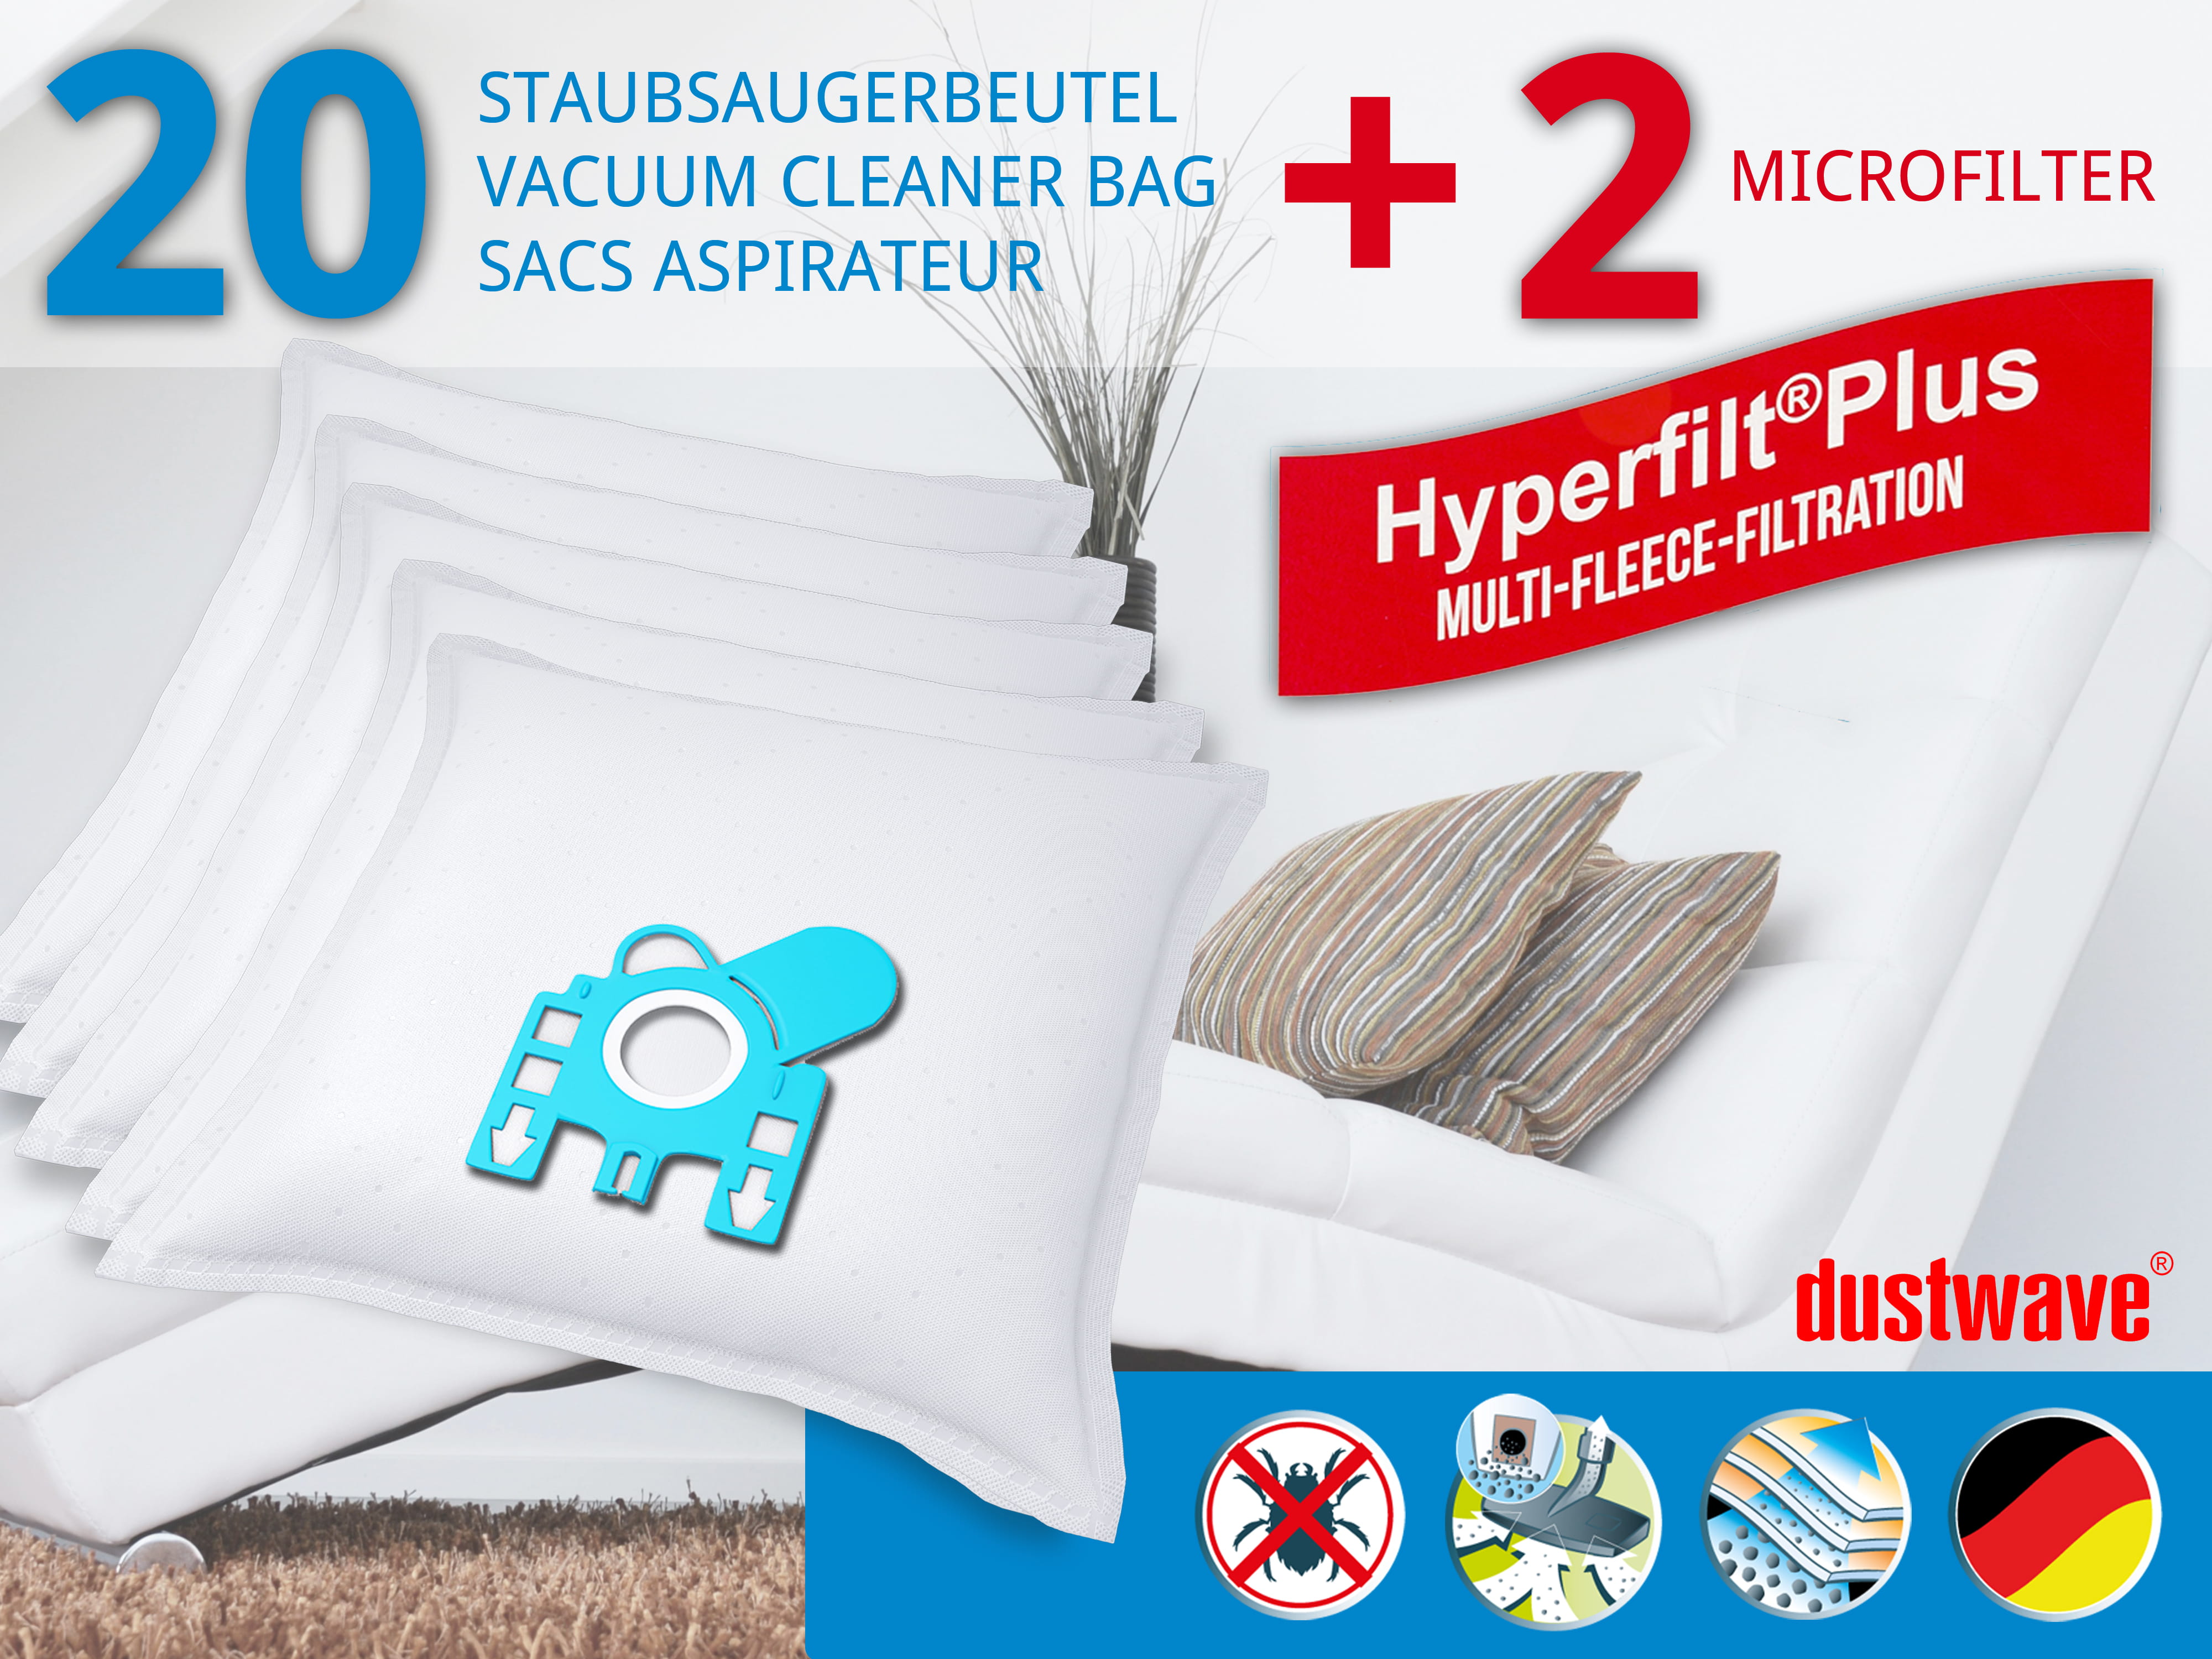 Dustwave® 20 Staubsaugerbeutel für Hoover TE70_TE51011 - hocheffizient, mehrlagiges Mikrovlies mit Hygieneverschluss - Made in Germany